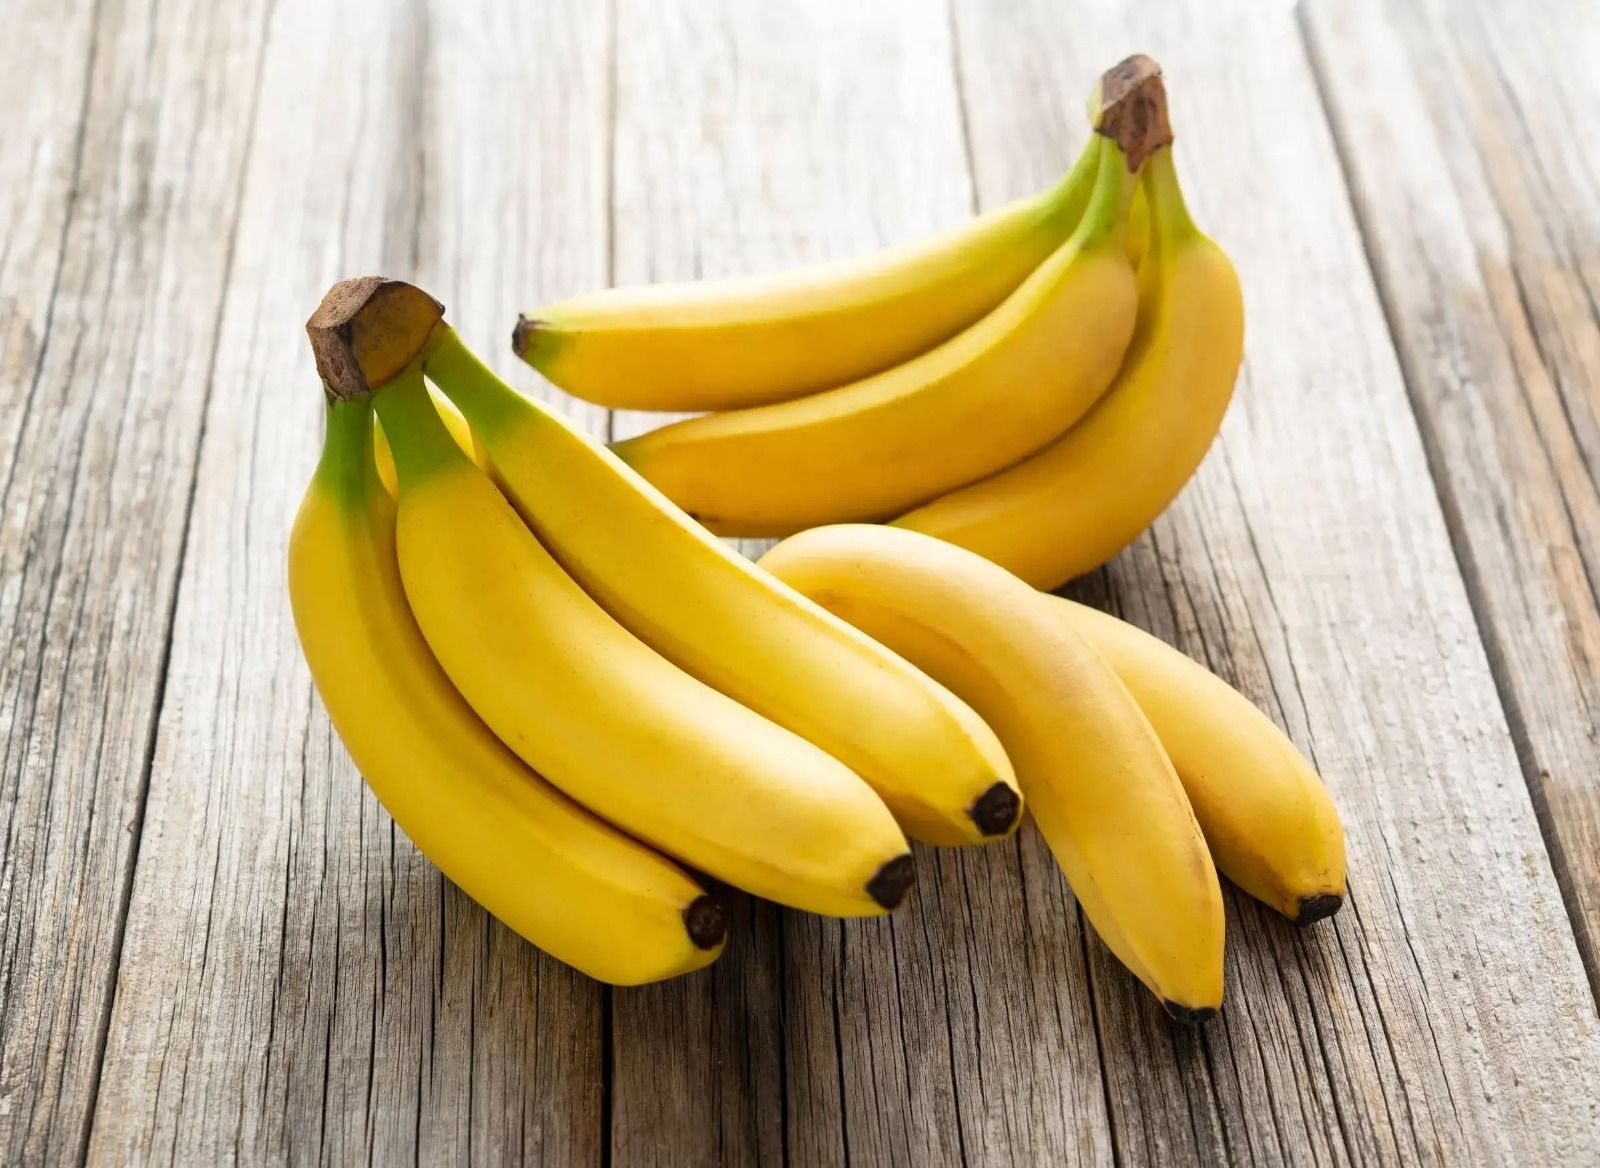 Kandungan nutrisi pisang bermanfaat bagi perkembangan tubuh anak/